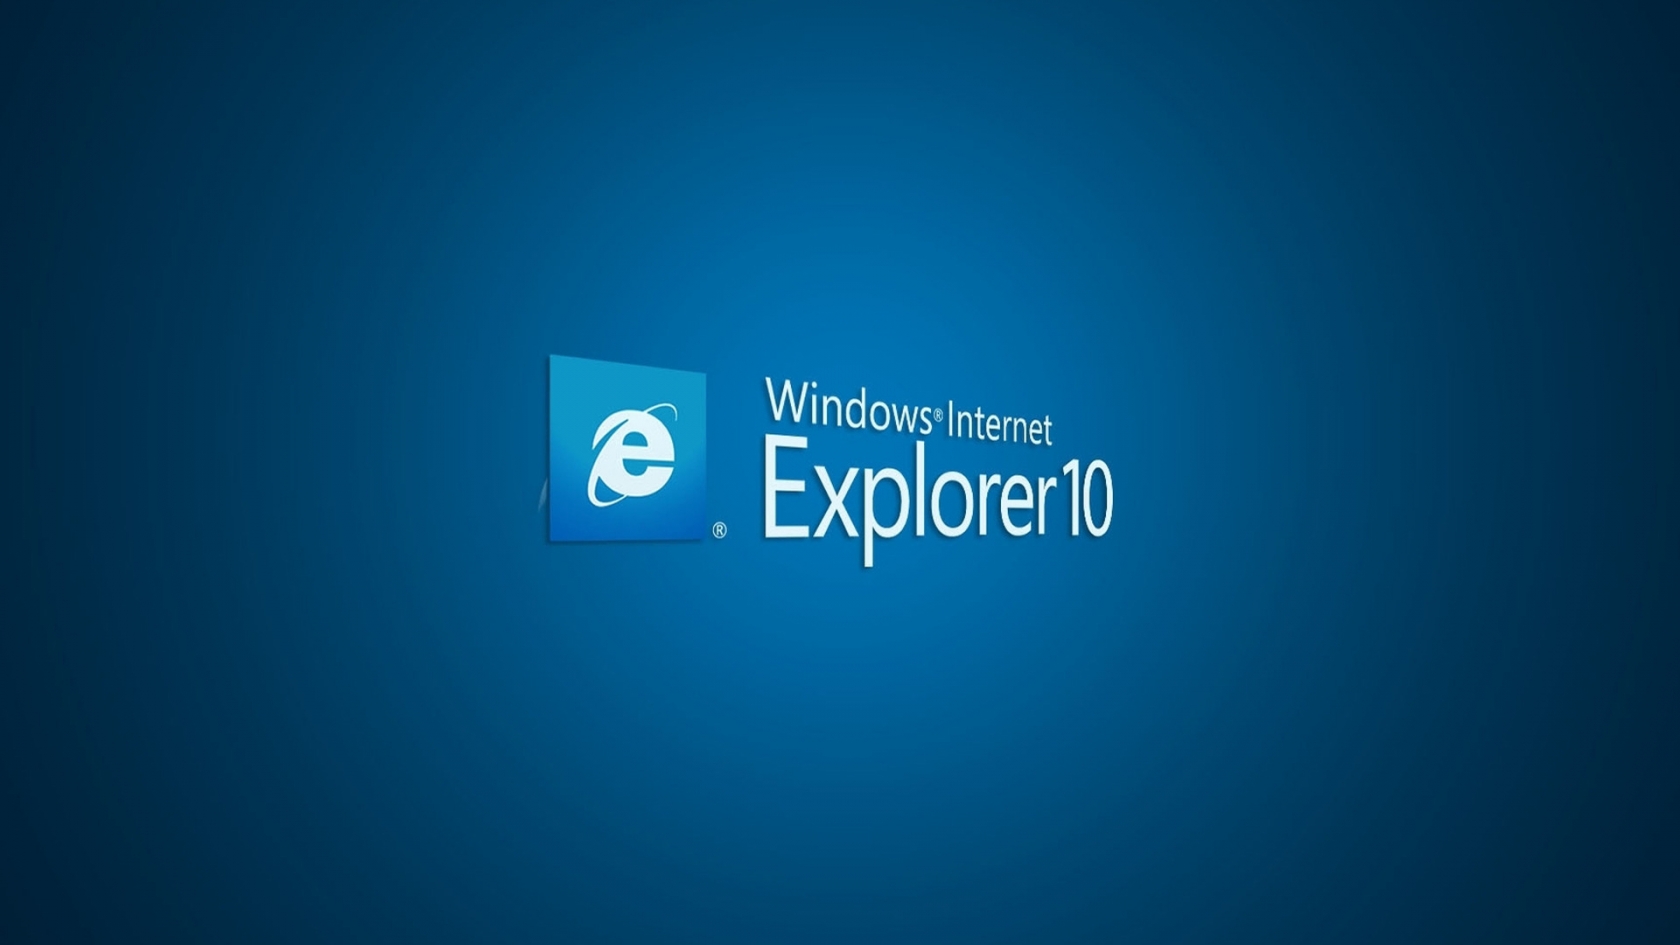 Internet Explorer 10 for 1680 x 945 HDTV resolution